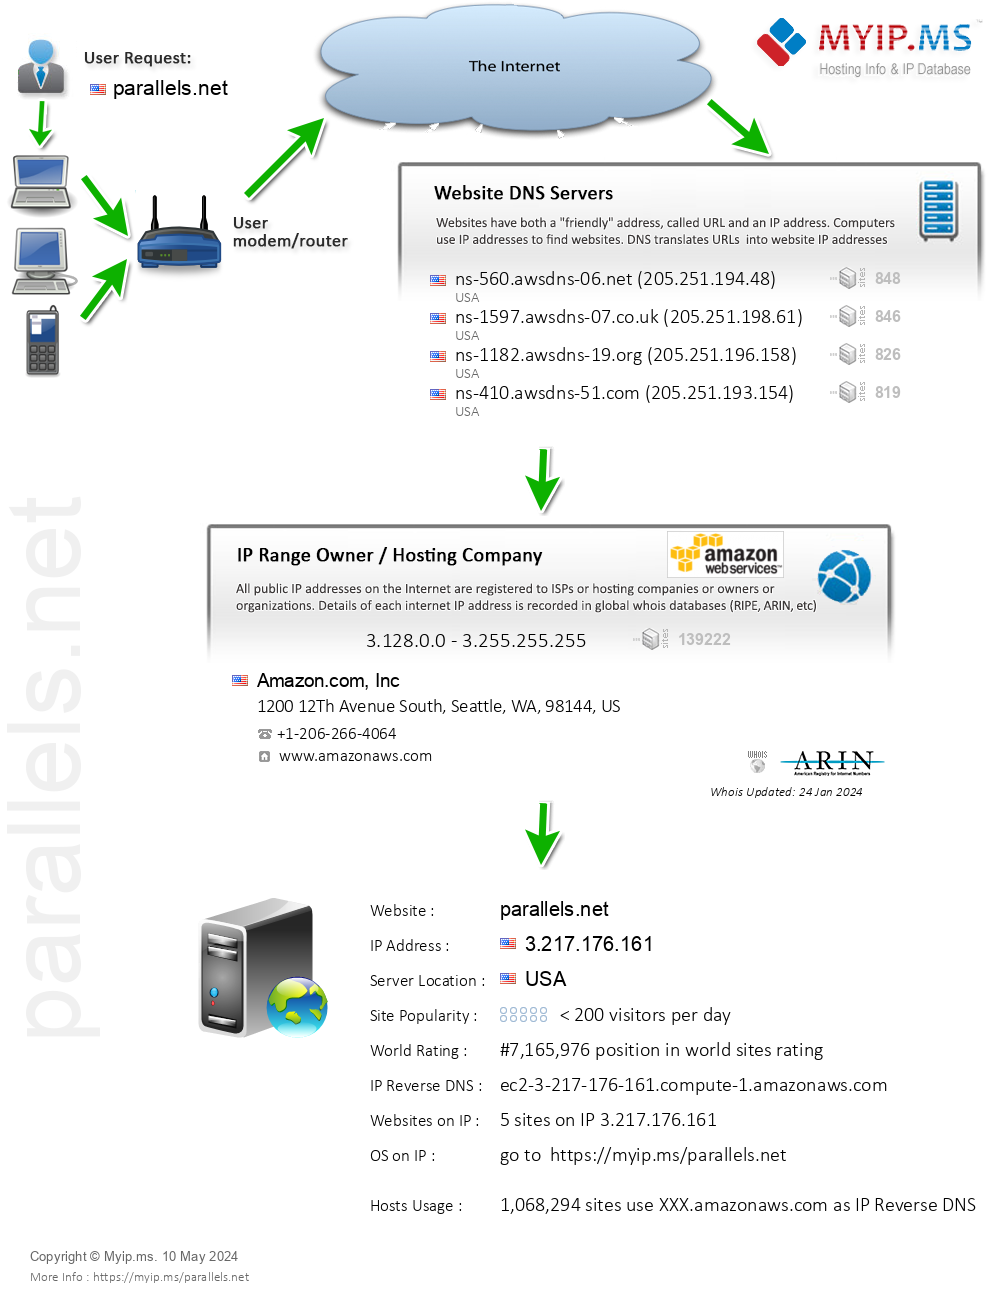 Parallels.net - Website Hosting Visual IP Diagram